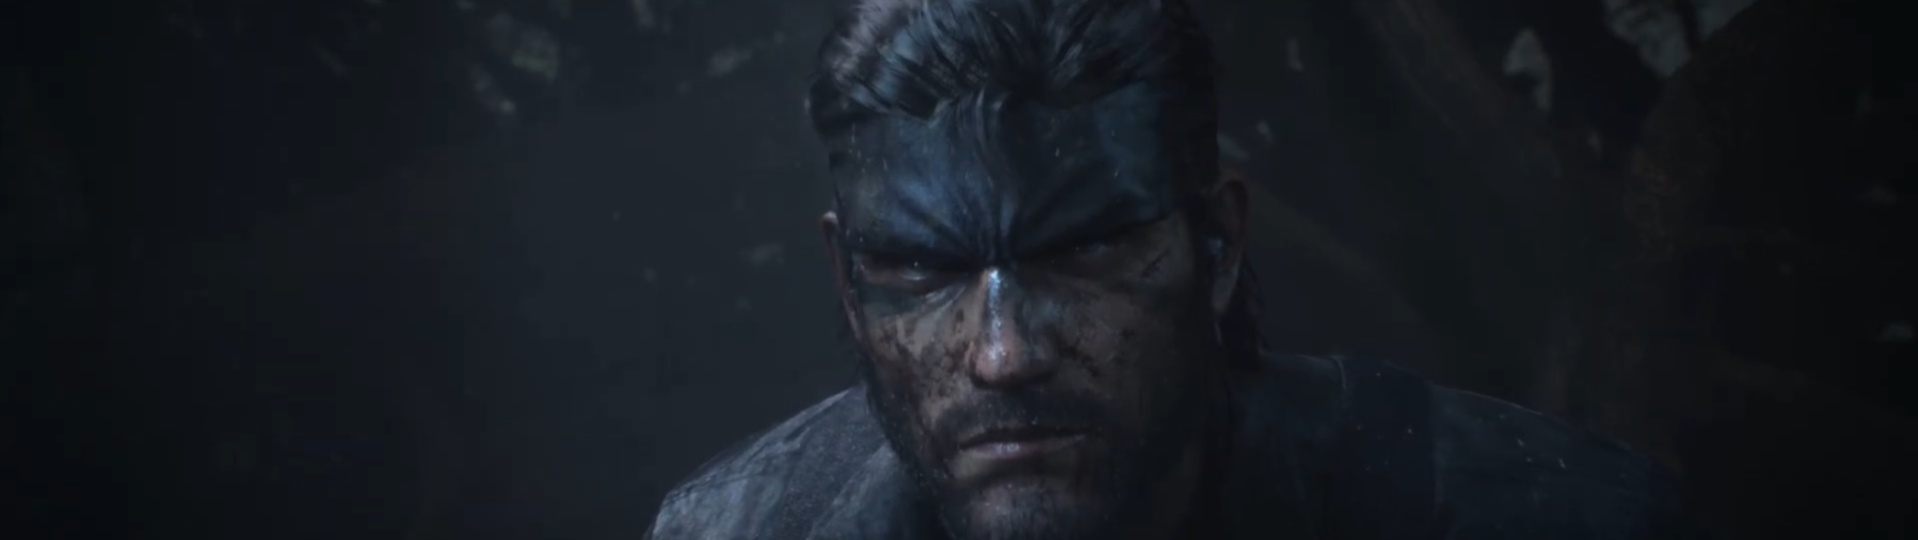 Metal Gear Solid 3 Remake je potvrzen! | Videa